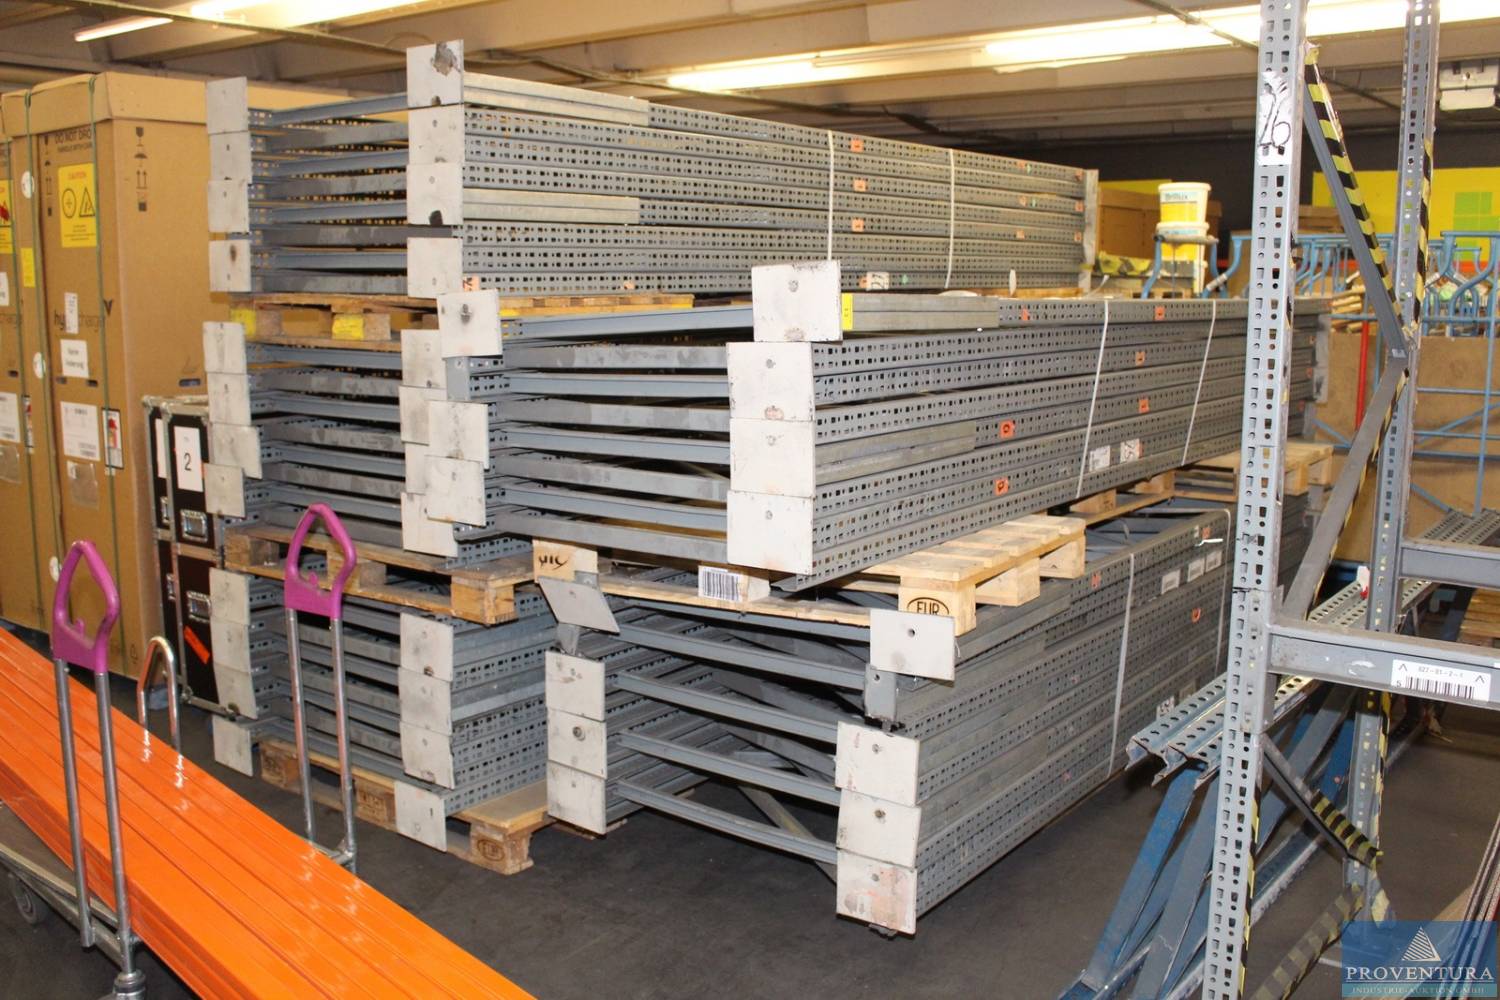 Nachversteigerung Grünfuchs Logistik GmbH: Palettenregal ca. 300x100 cm ca. 495 Palettenstellplätze, Palettenregal ca. 450x300 cm ca. 26 Palettenstellplätze